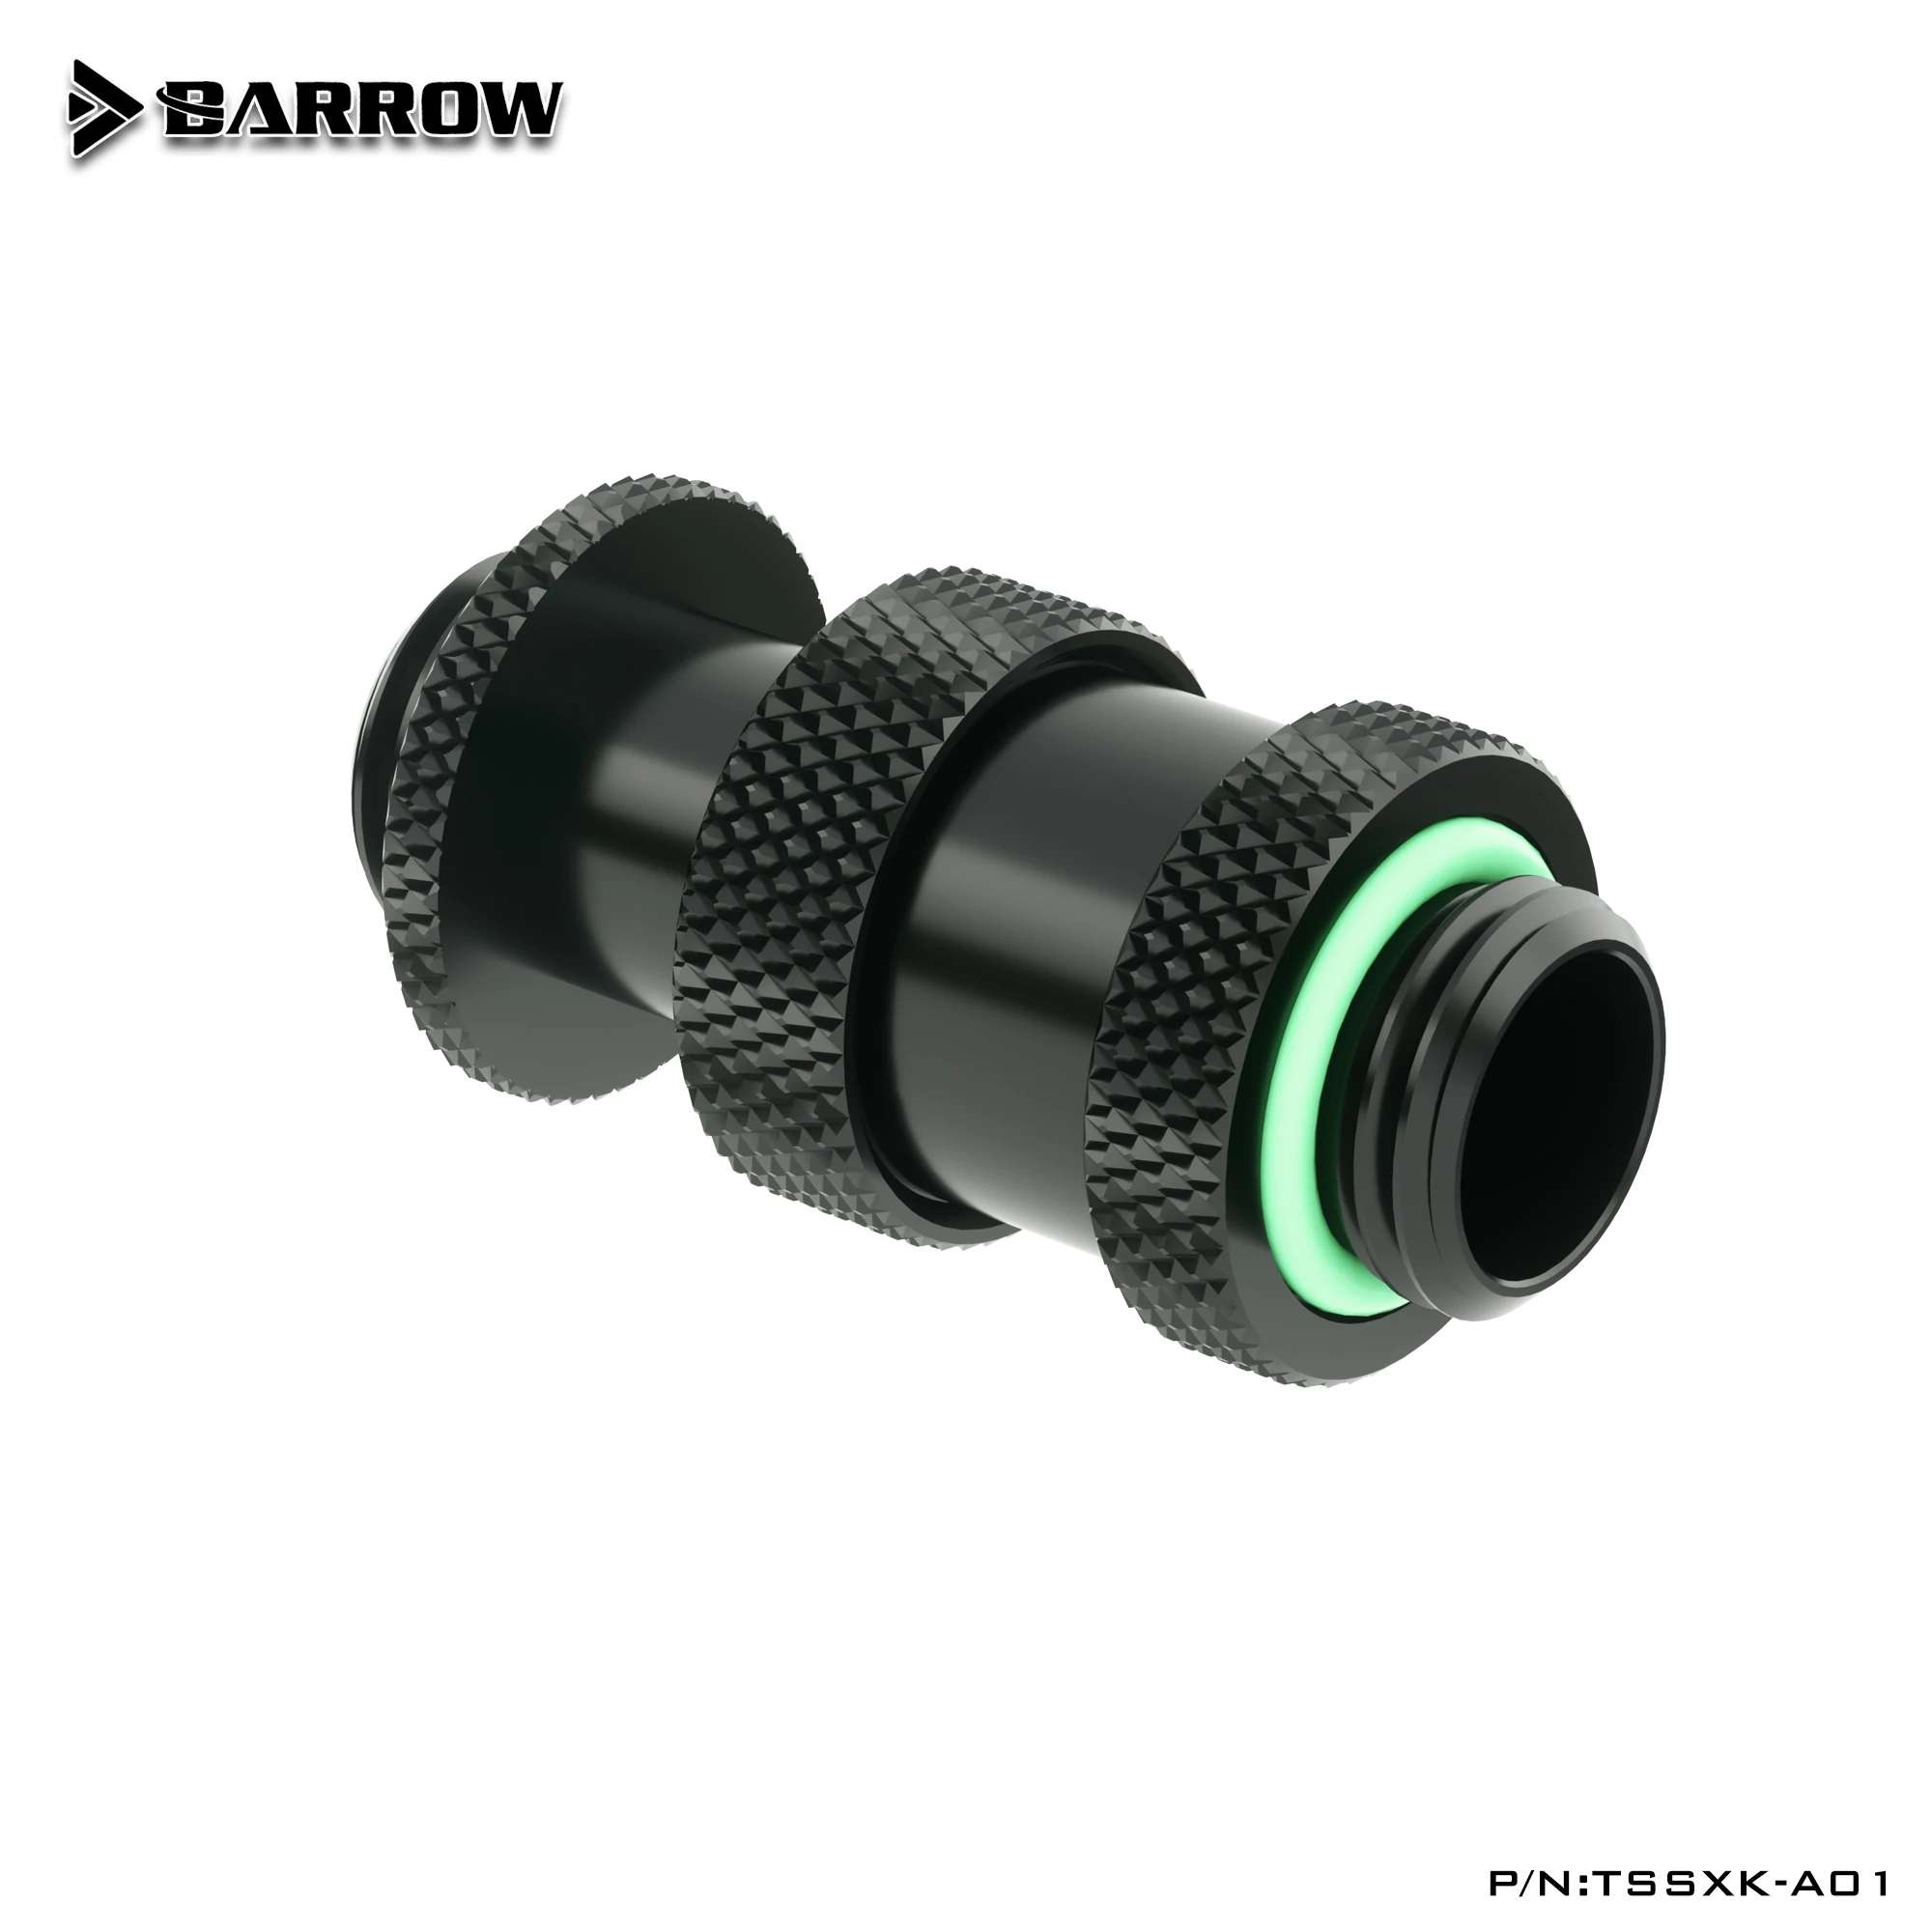 Produžni kabel rotacioni konektora Barrow (22-31 mm) se koristi za kartice SLI-CF G1/4